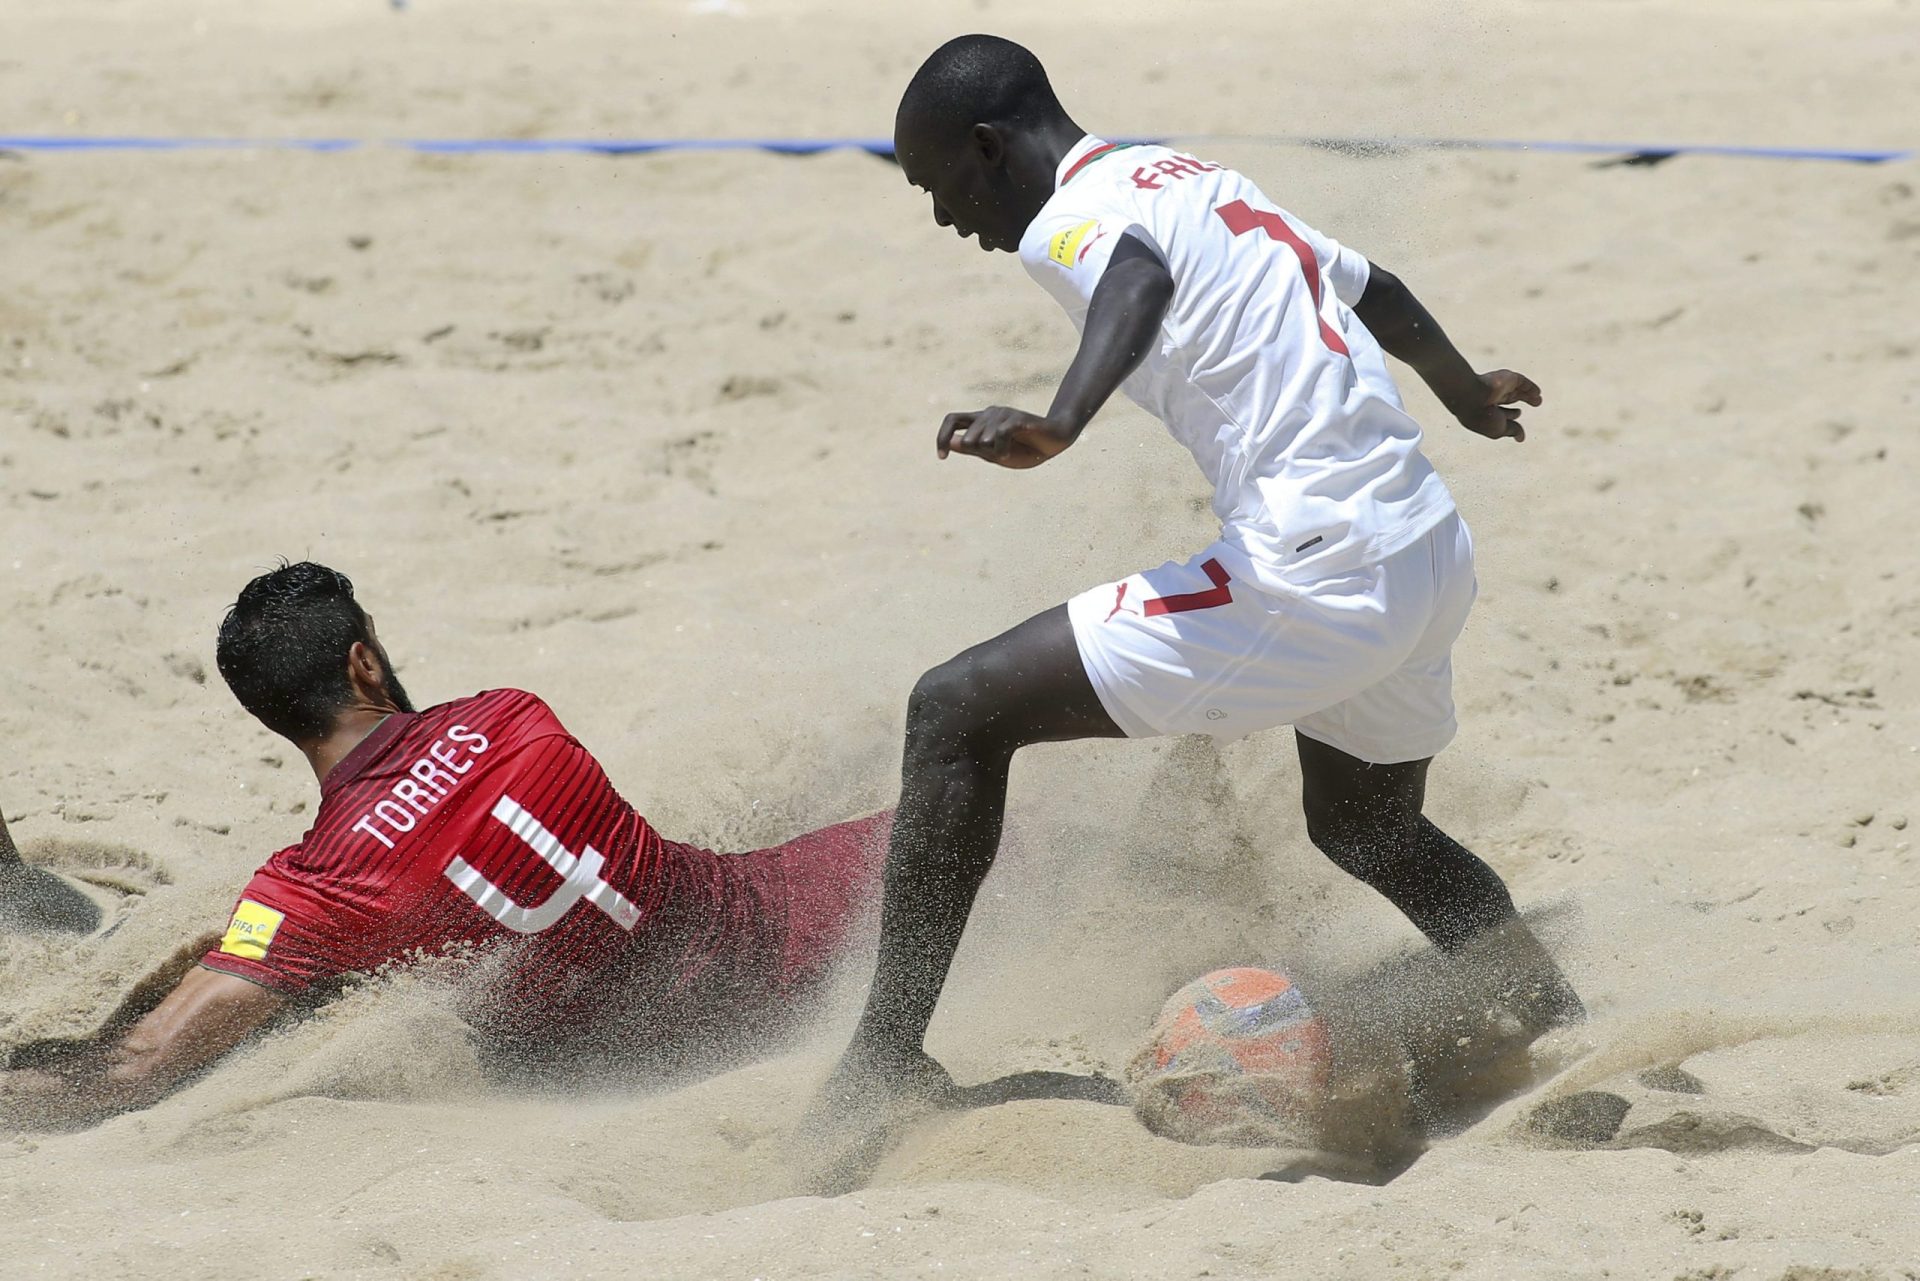 Futebol praia: Portugal perde com Senegal no segundo jogo no Mundial